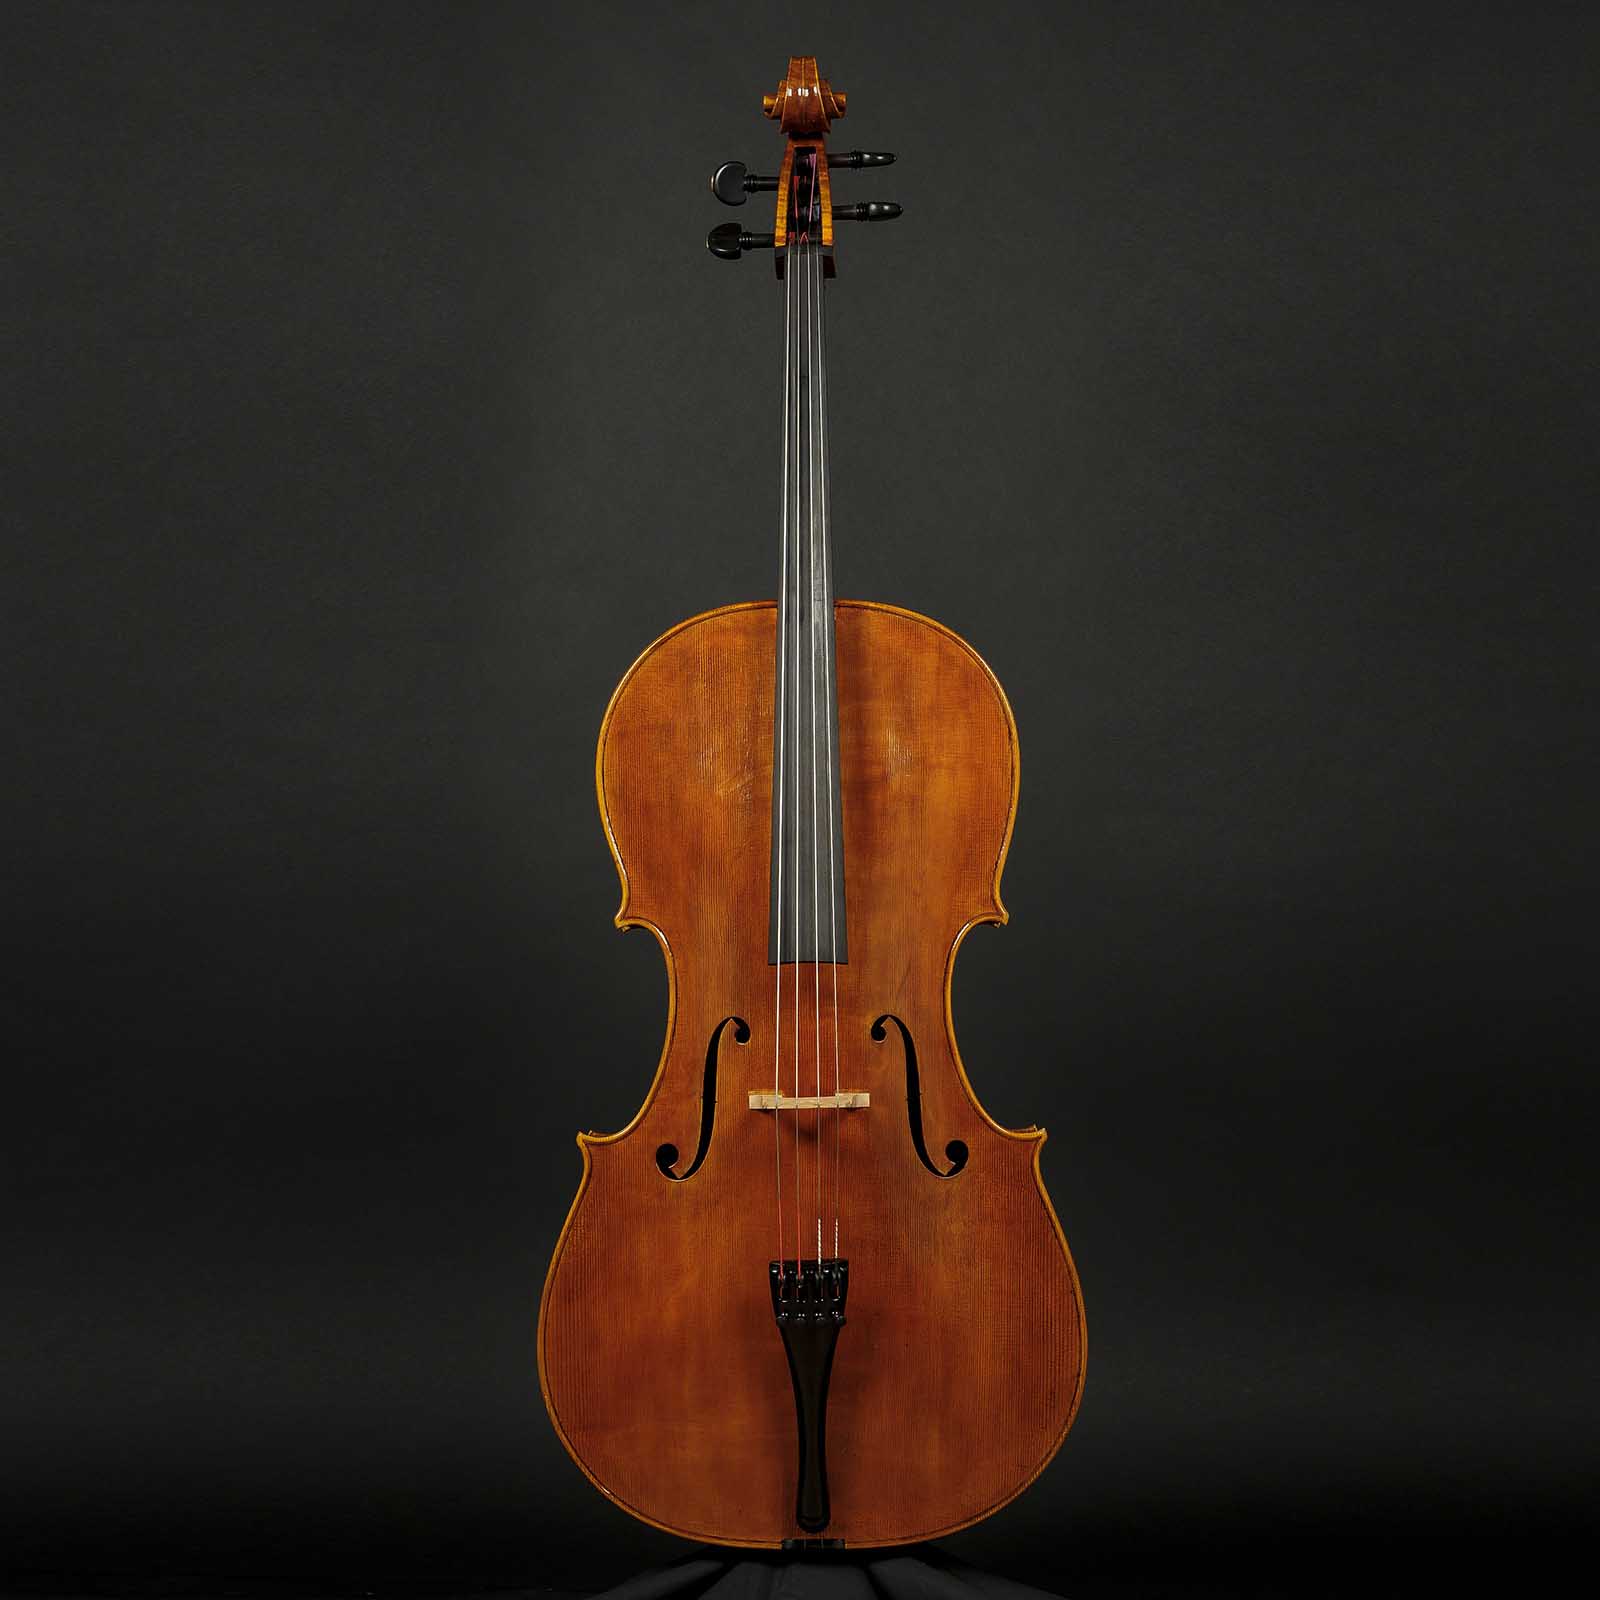 Antonio Stradivari Cremona 1713 “Bass of Spain“ - Image 1